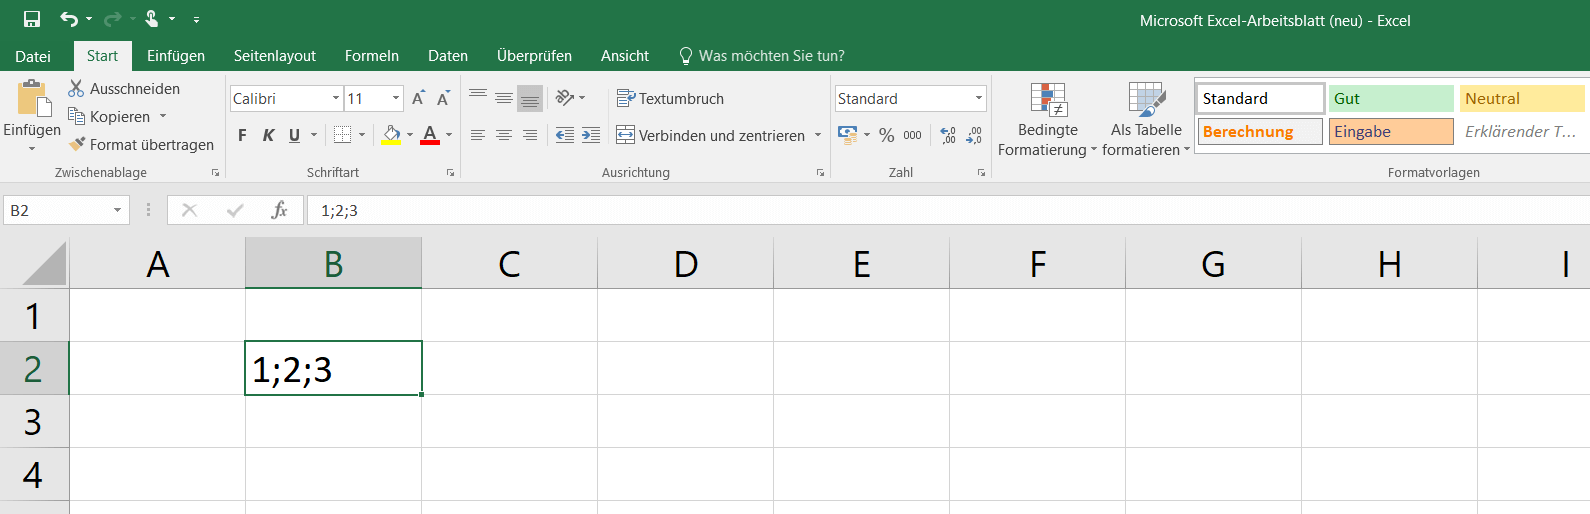 Excel 2016: Beispielzelle mit Trennzeichen (Semikolon)